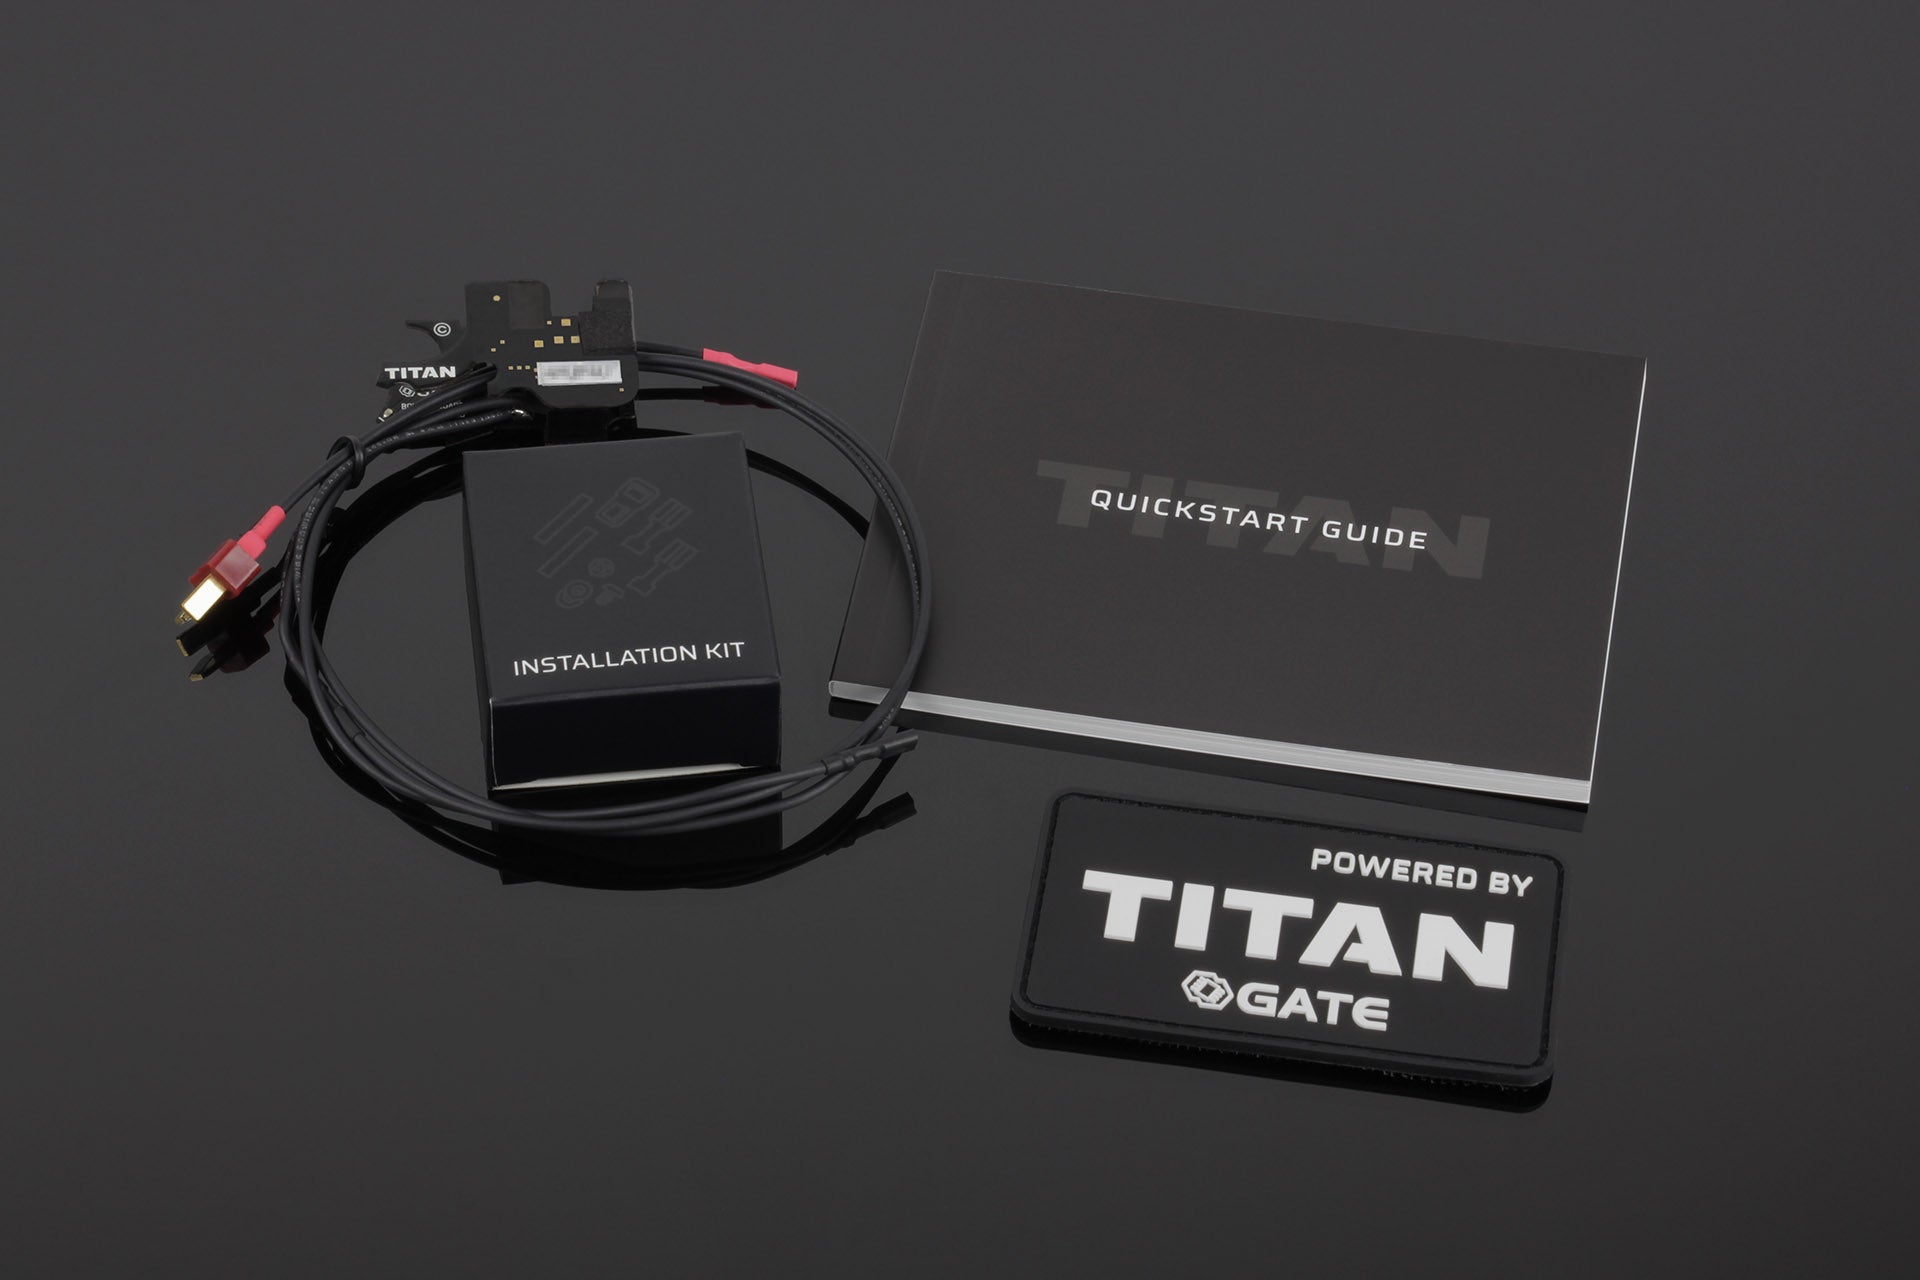 TITAN V2 EXPERT – GATE Enterprise USD